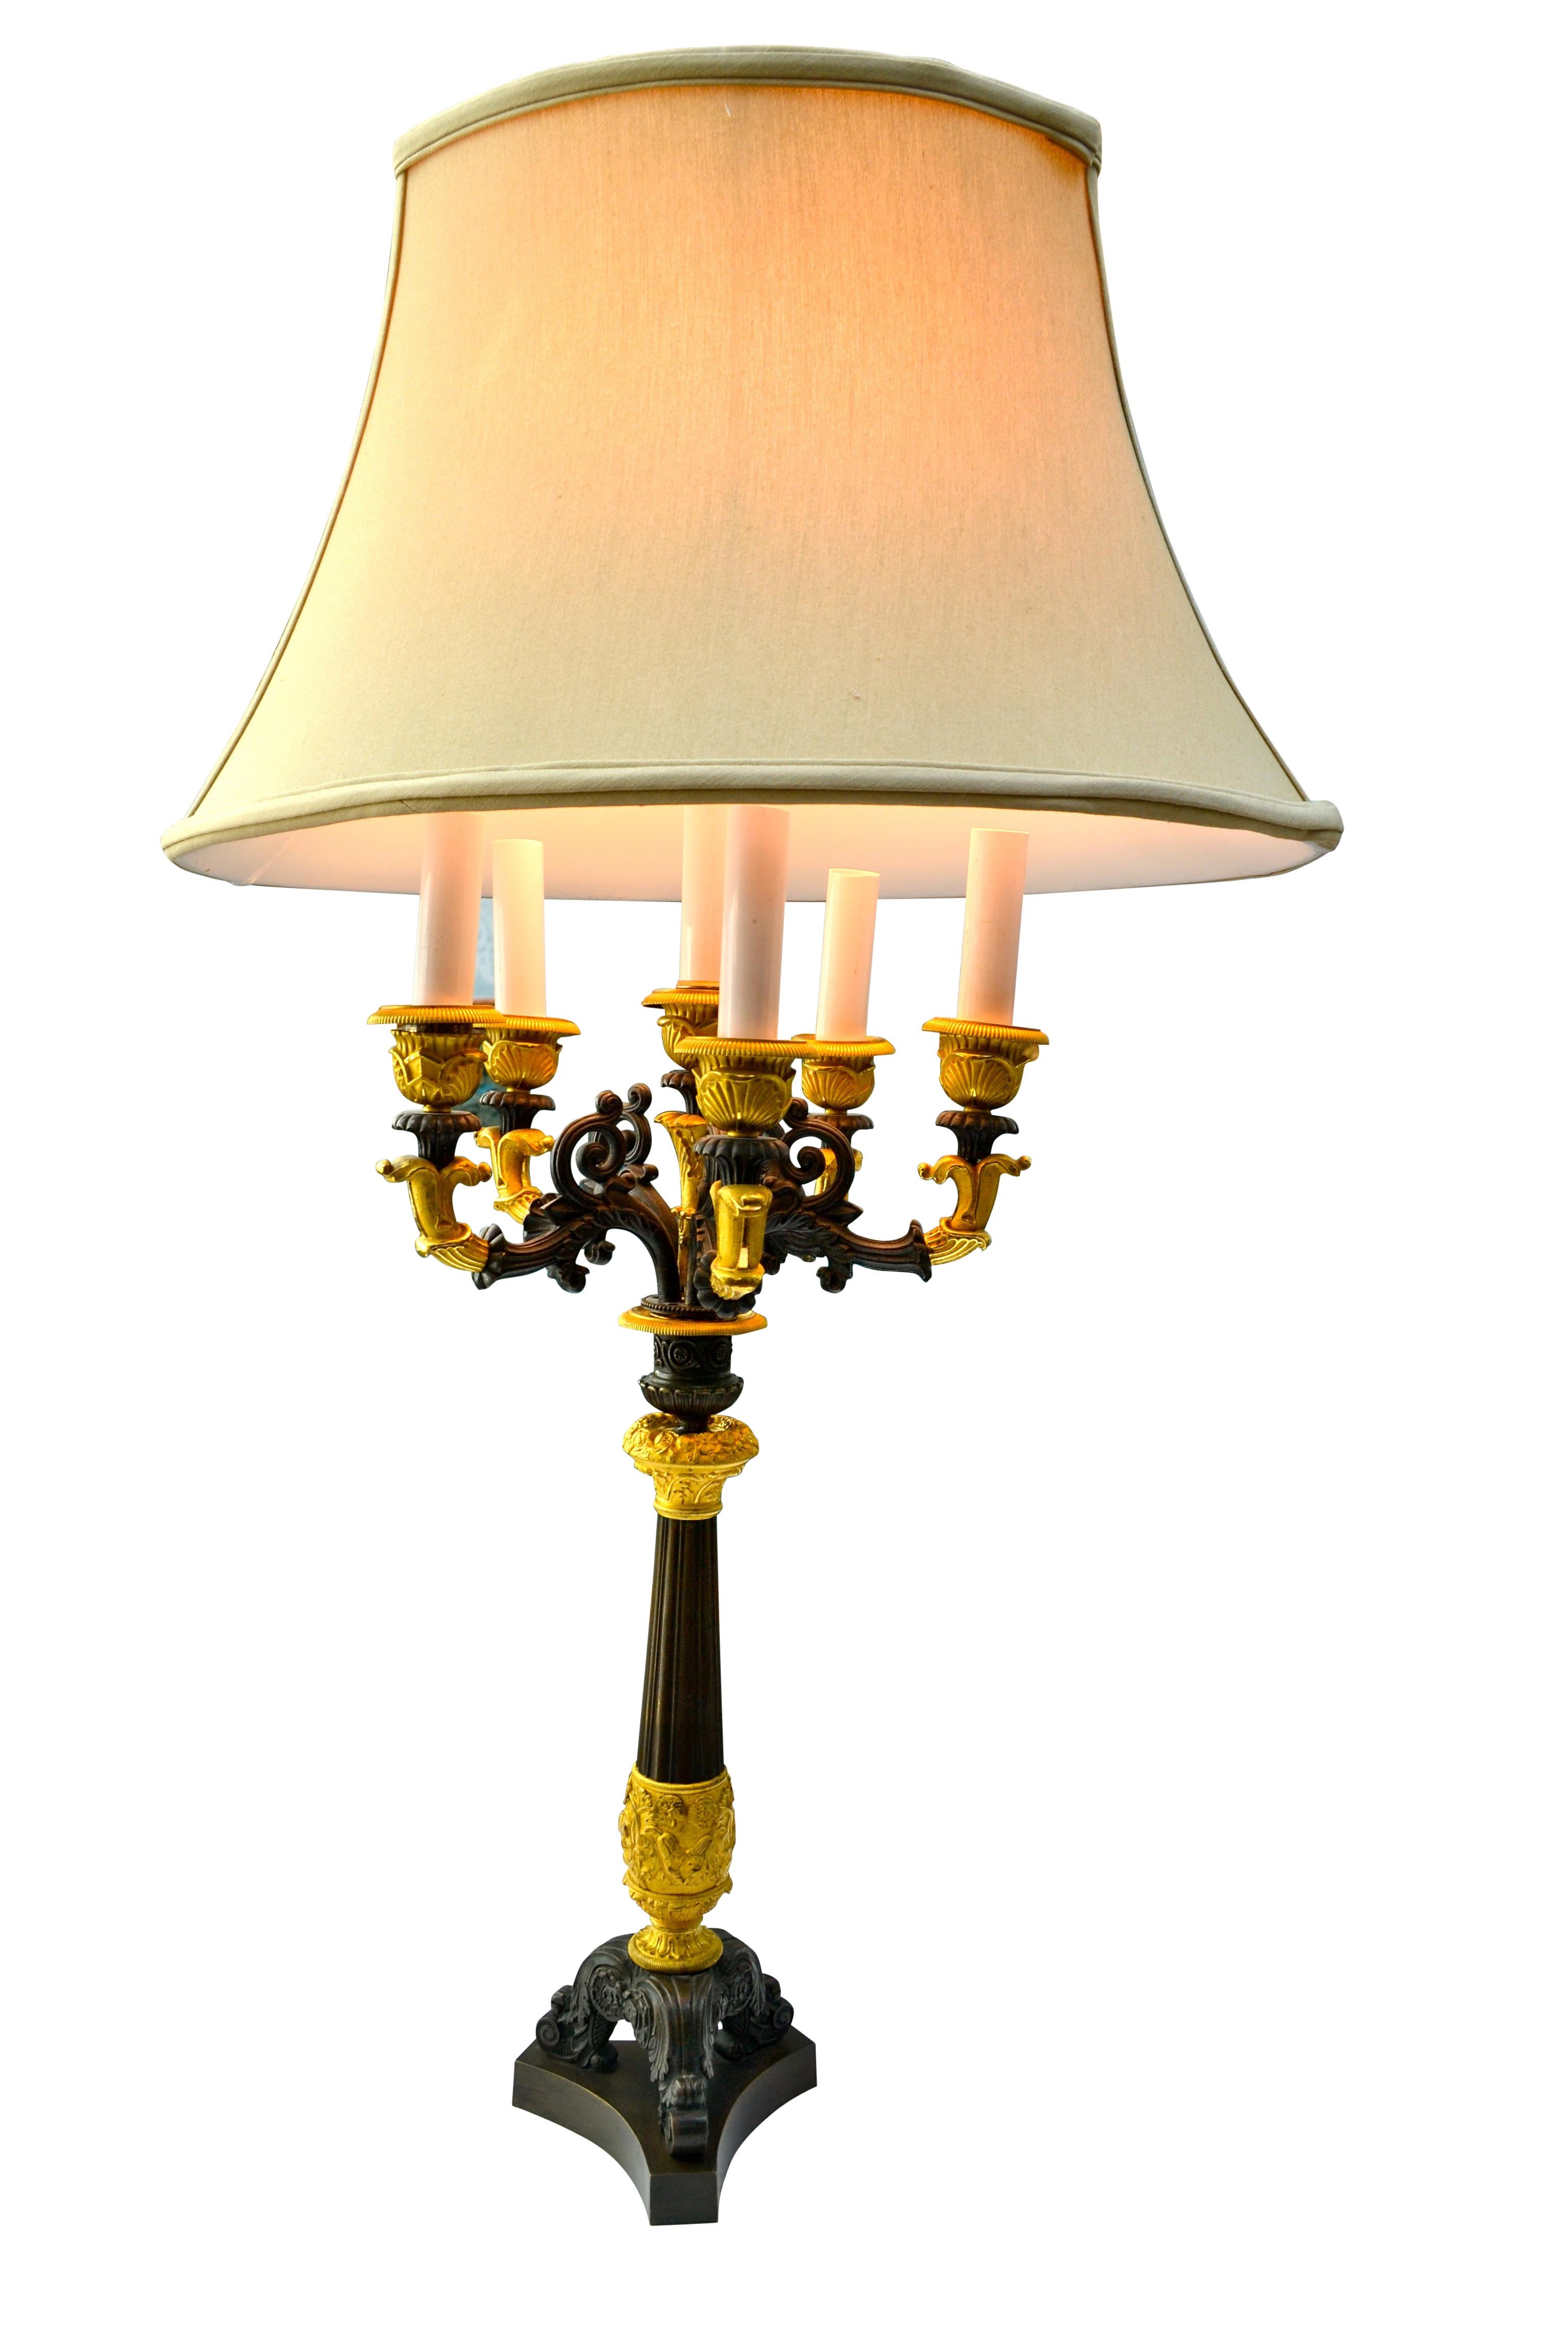 Ein patinierter und vergoldeter Bronzeleuchter mit sechs Kerzen aus dem französischen Empire, der in eine Lampe umgewandelt wurde.